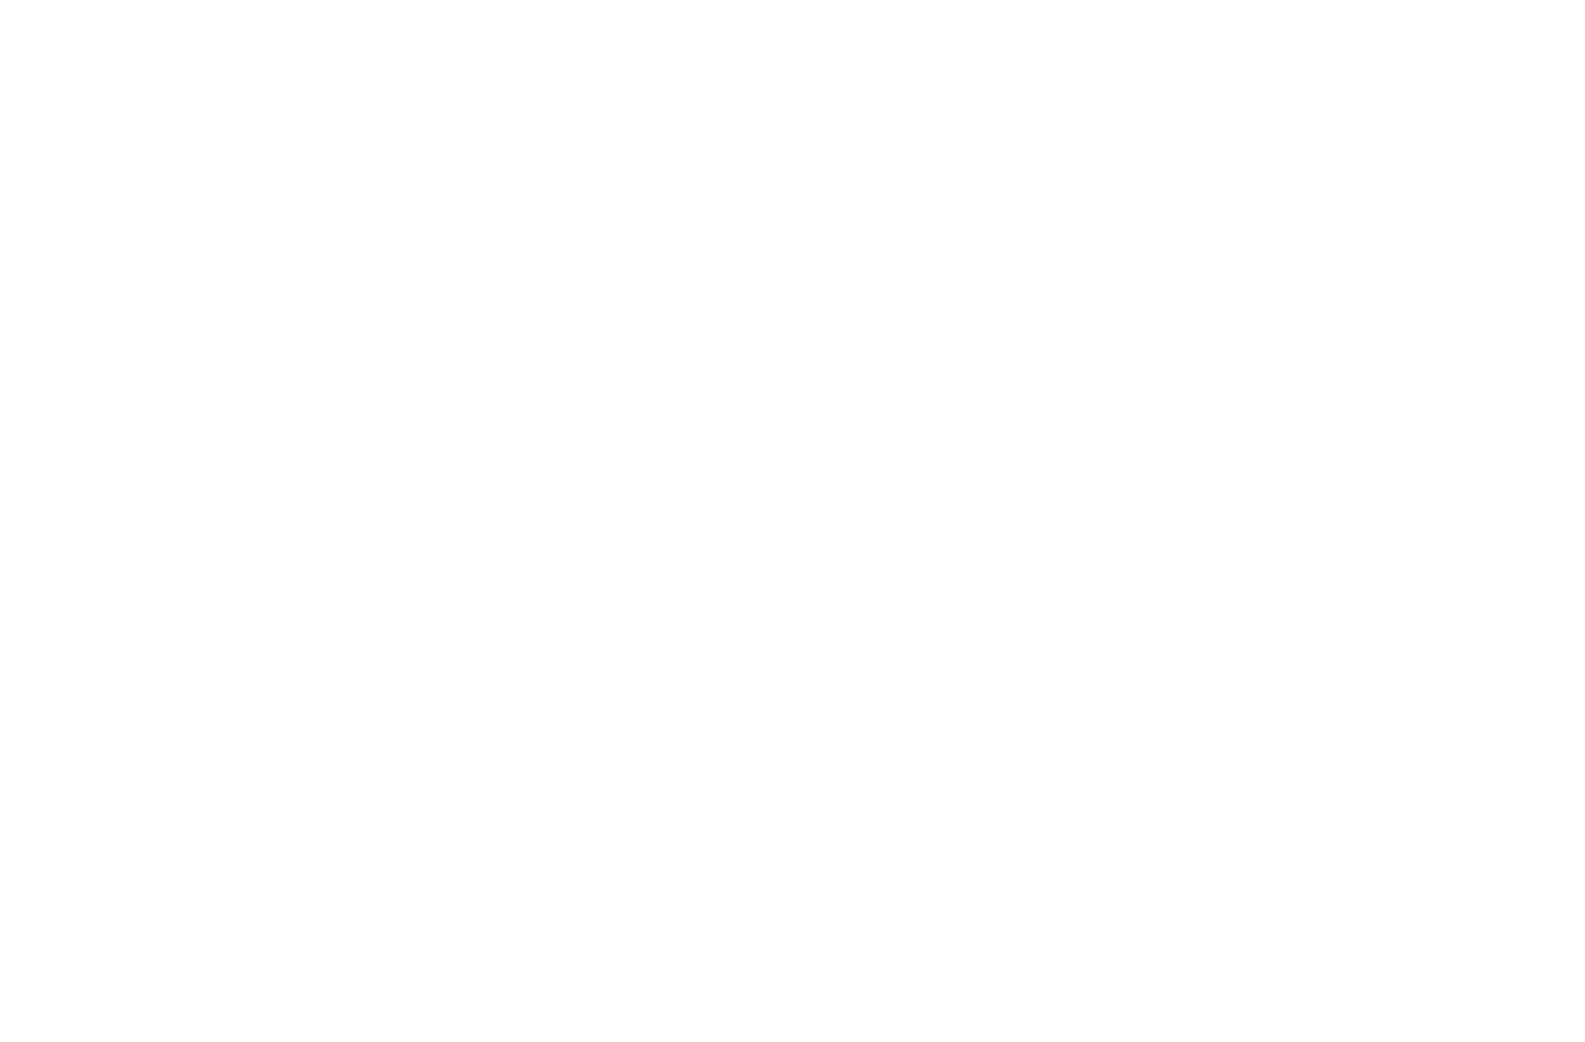 ENAV logo for dark backgrounds (transparent PNG)